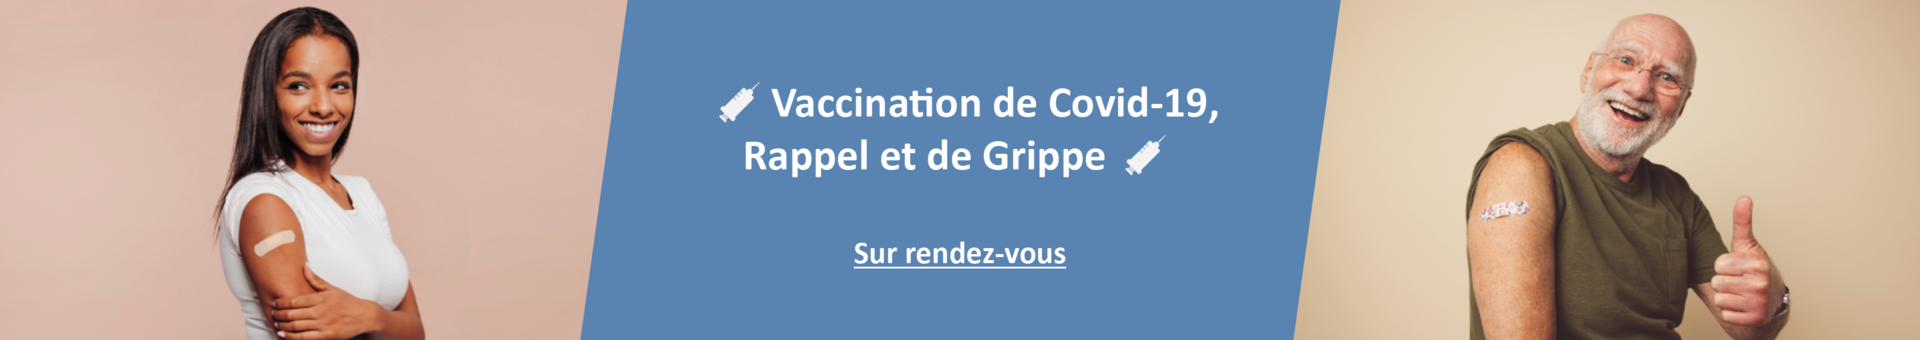 Deux personnes avec pansement après vaccination contre la covid-19